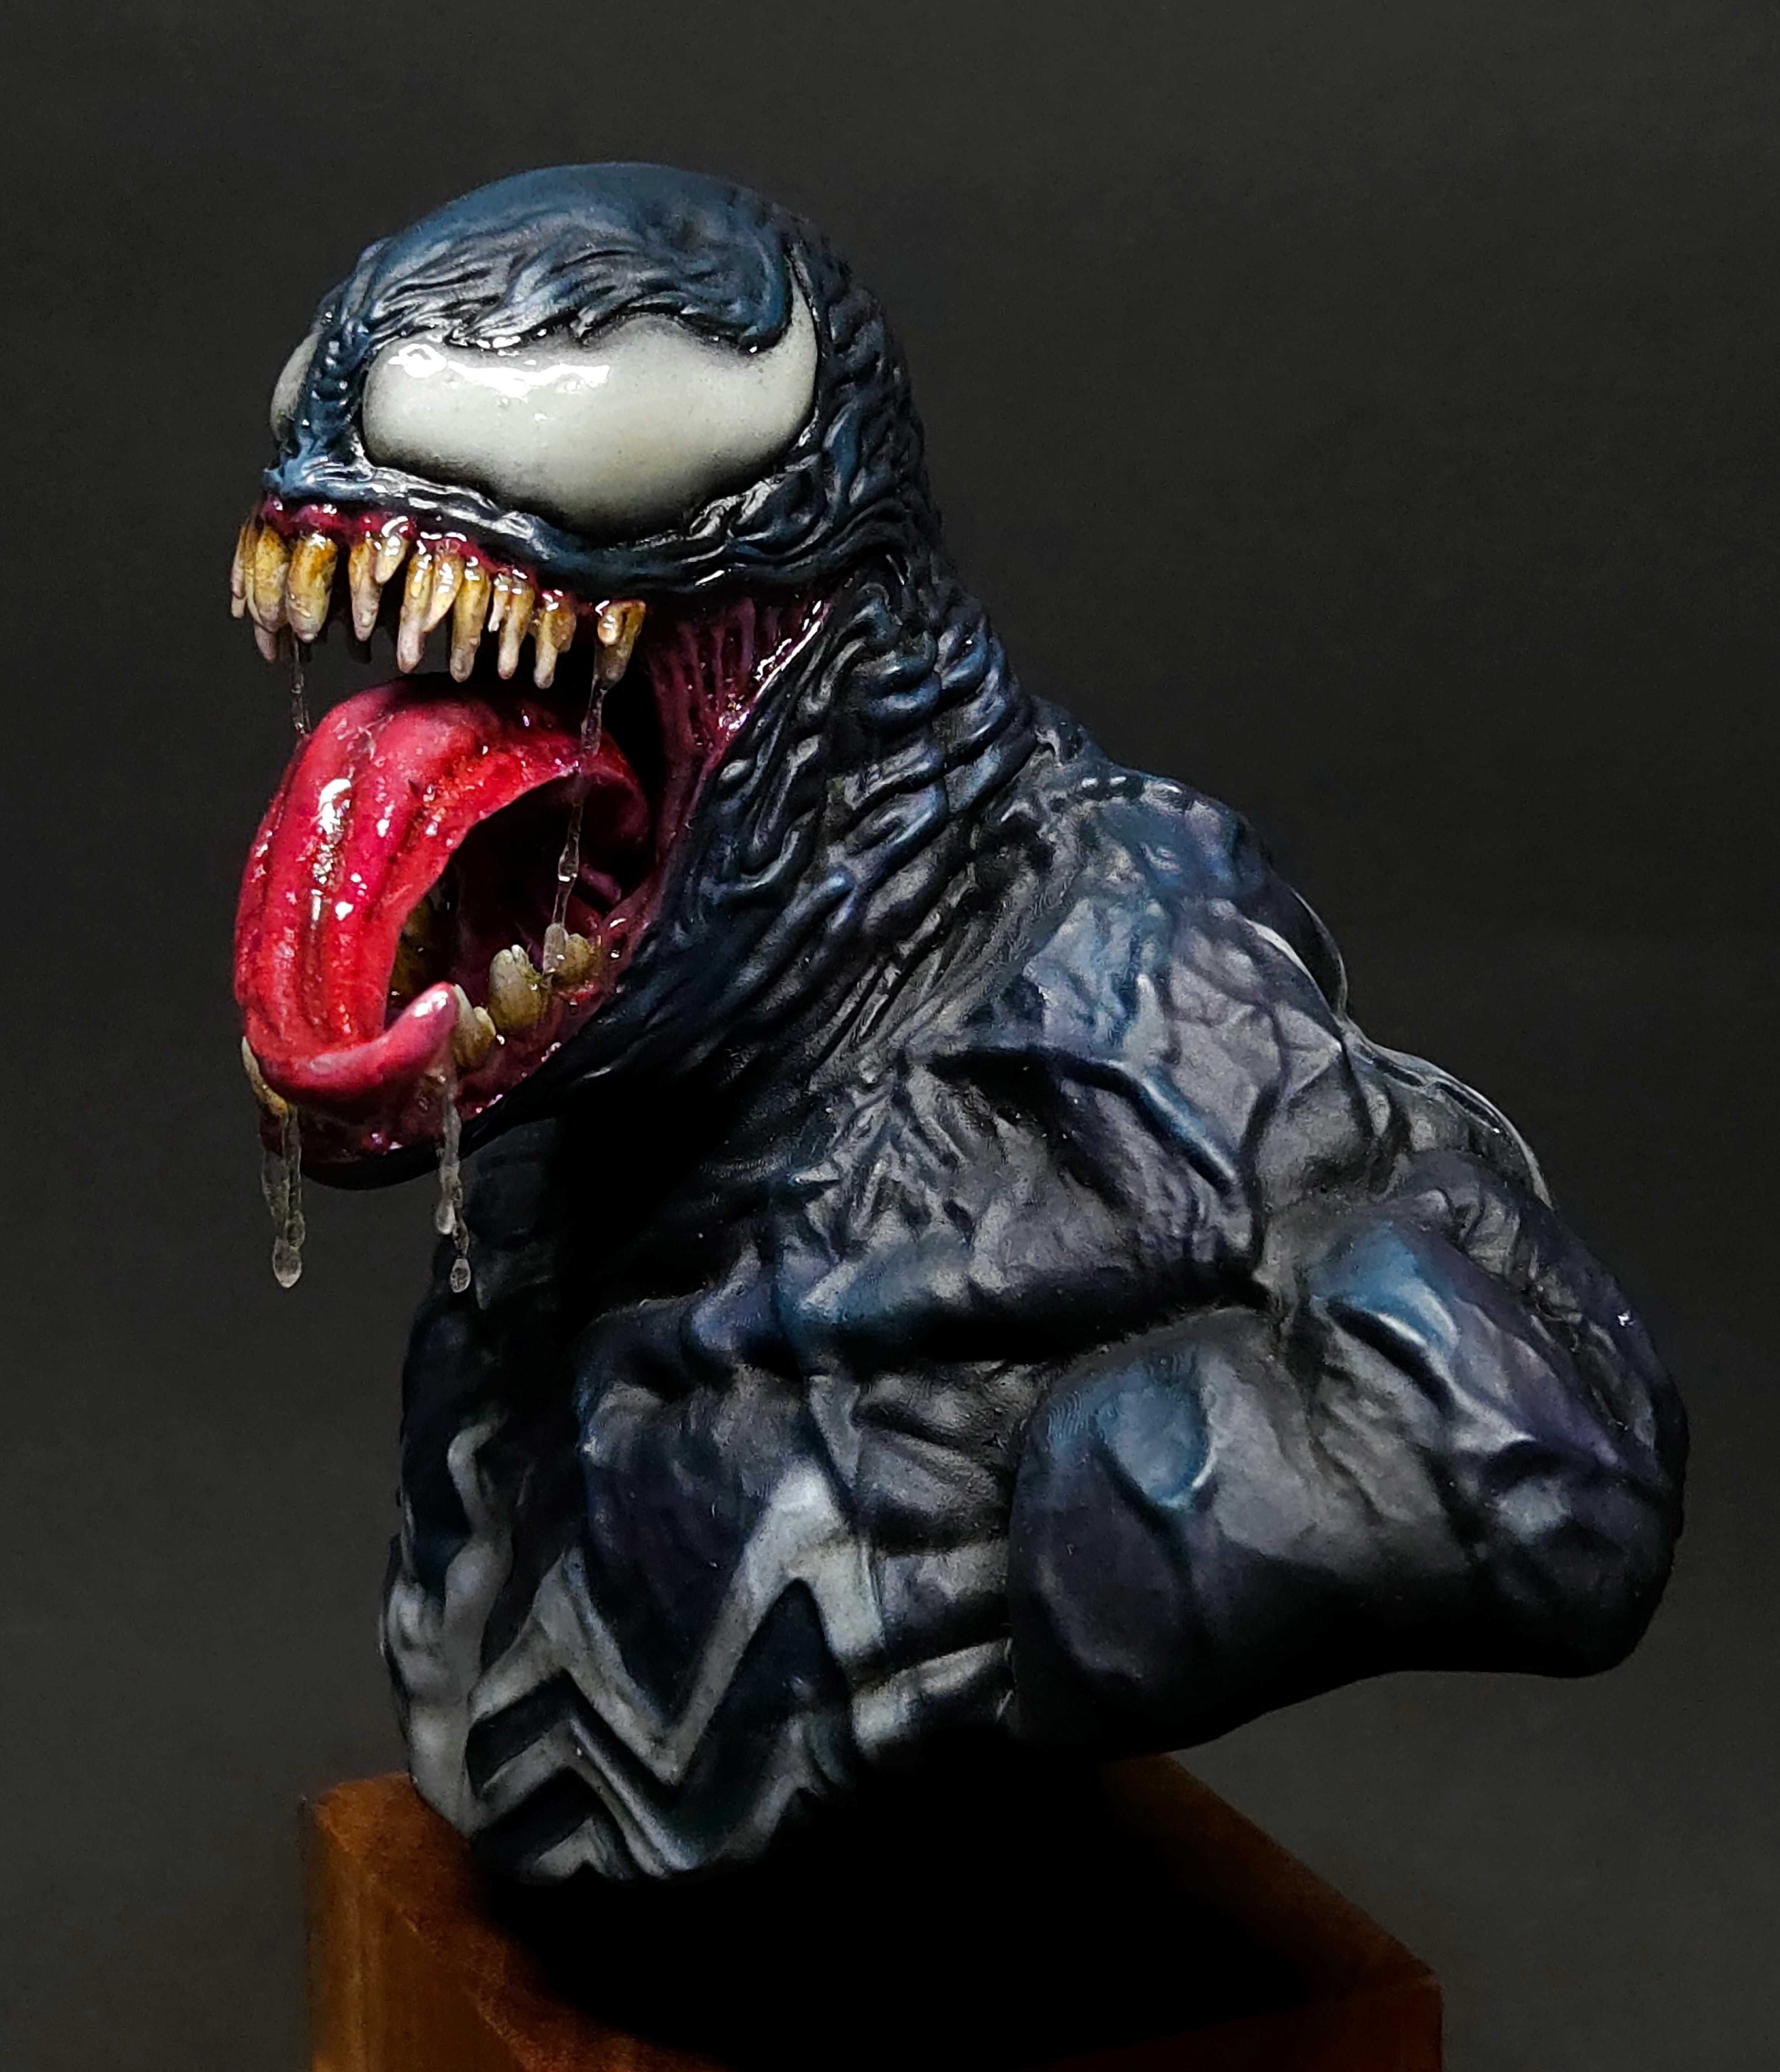 !Venom popiersie w skali 1/8 własnoręcznie malowane!